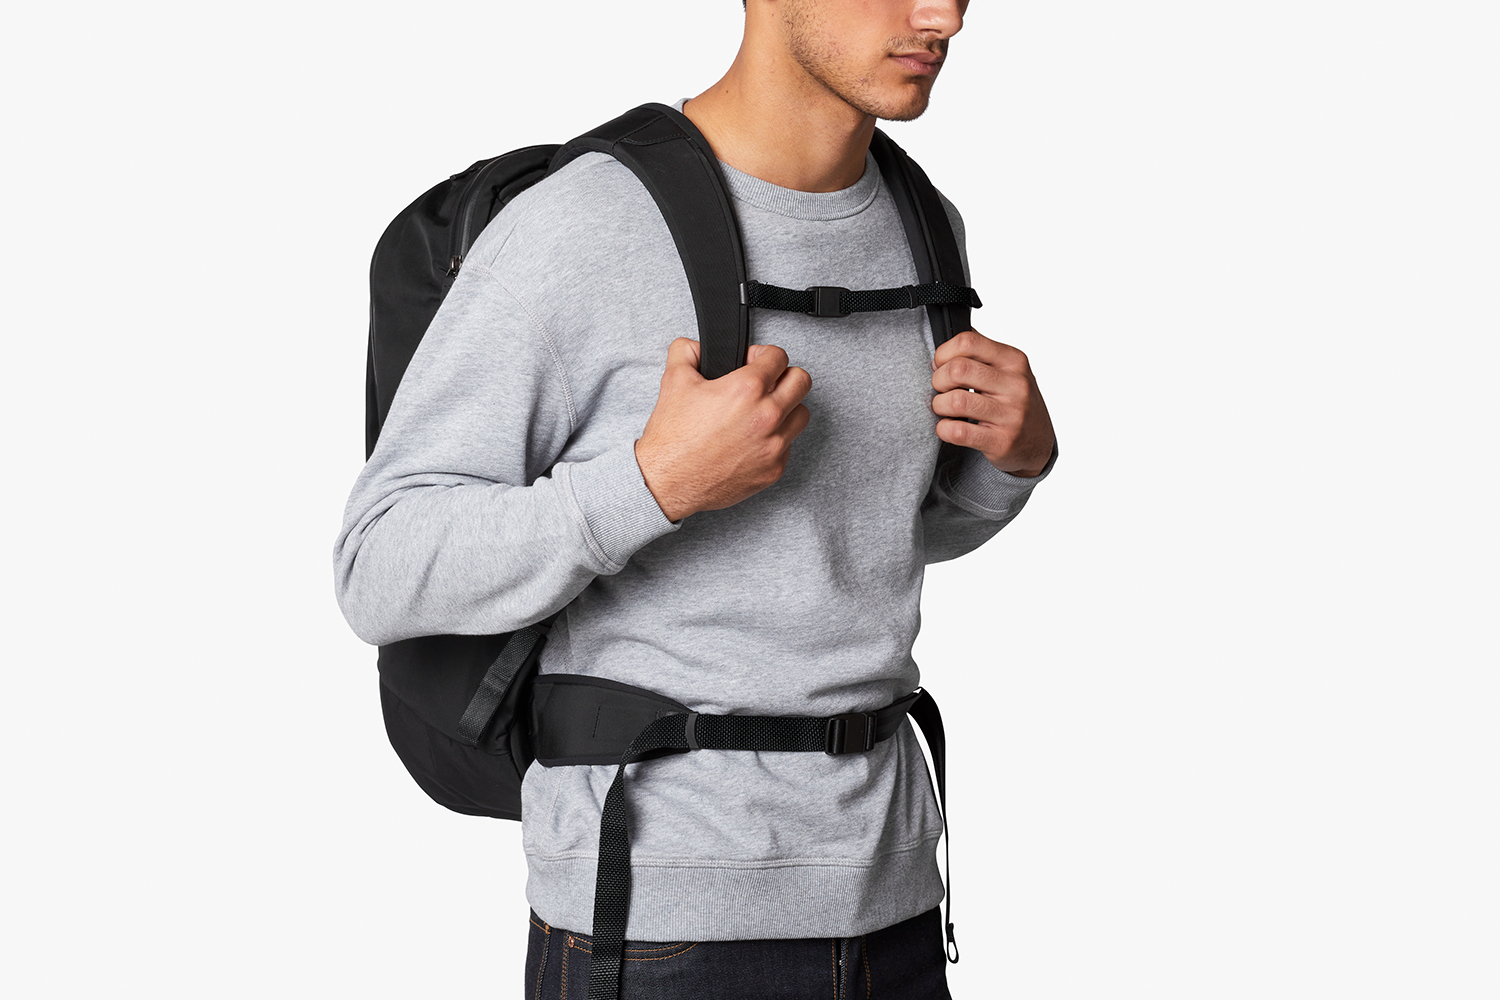 Nightsky Visita lo Store di BellroyBellroy Transit Backpack Plus notebook da 15, cinghie di compressione, cintura sterno regolabile, pannello posteriore sagomato, cintura in vita rimovibile, tasche per organizzazione 